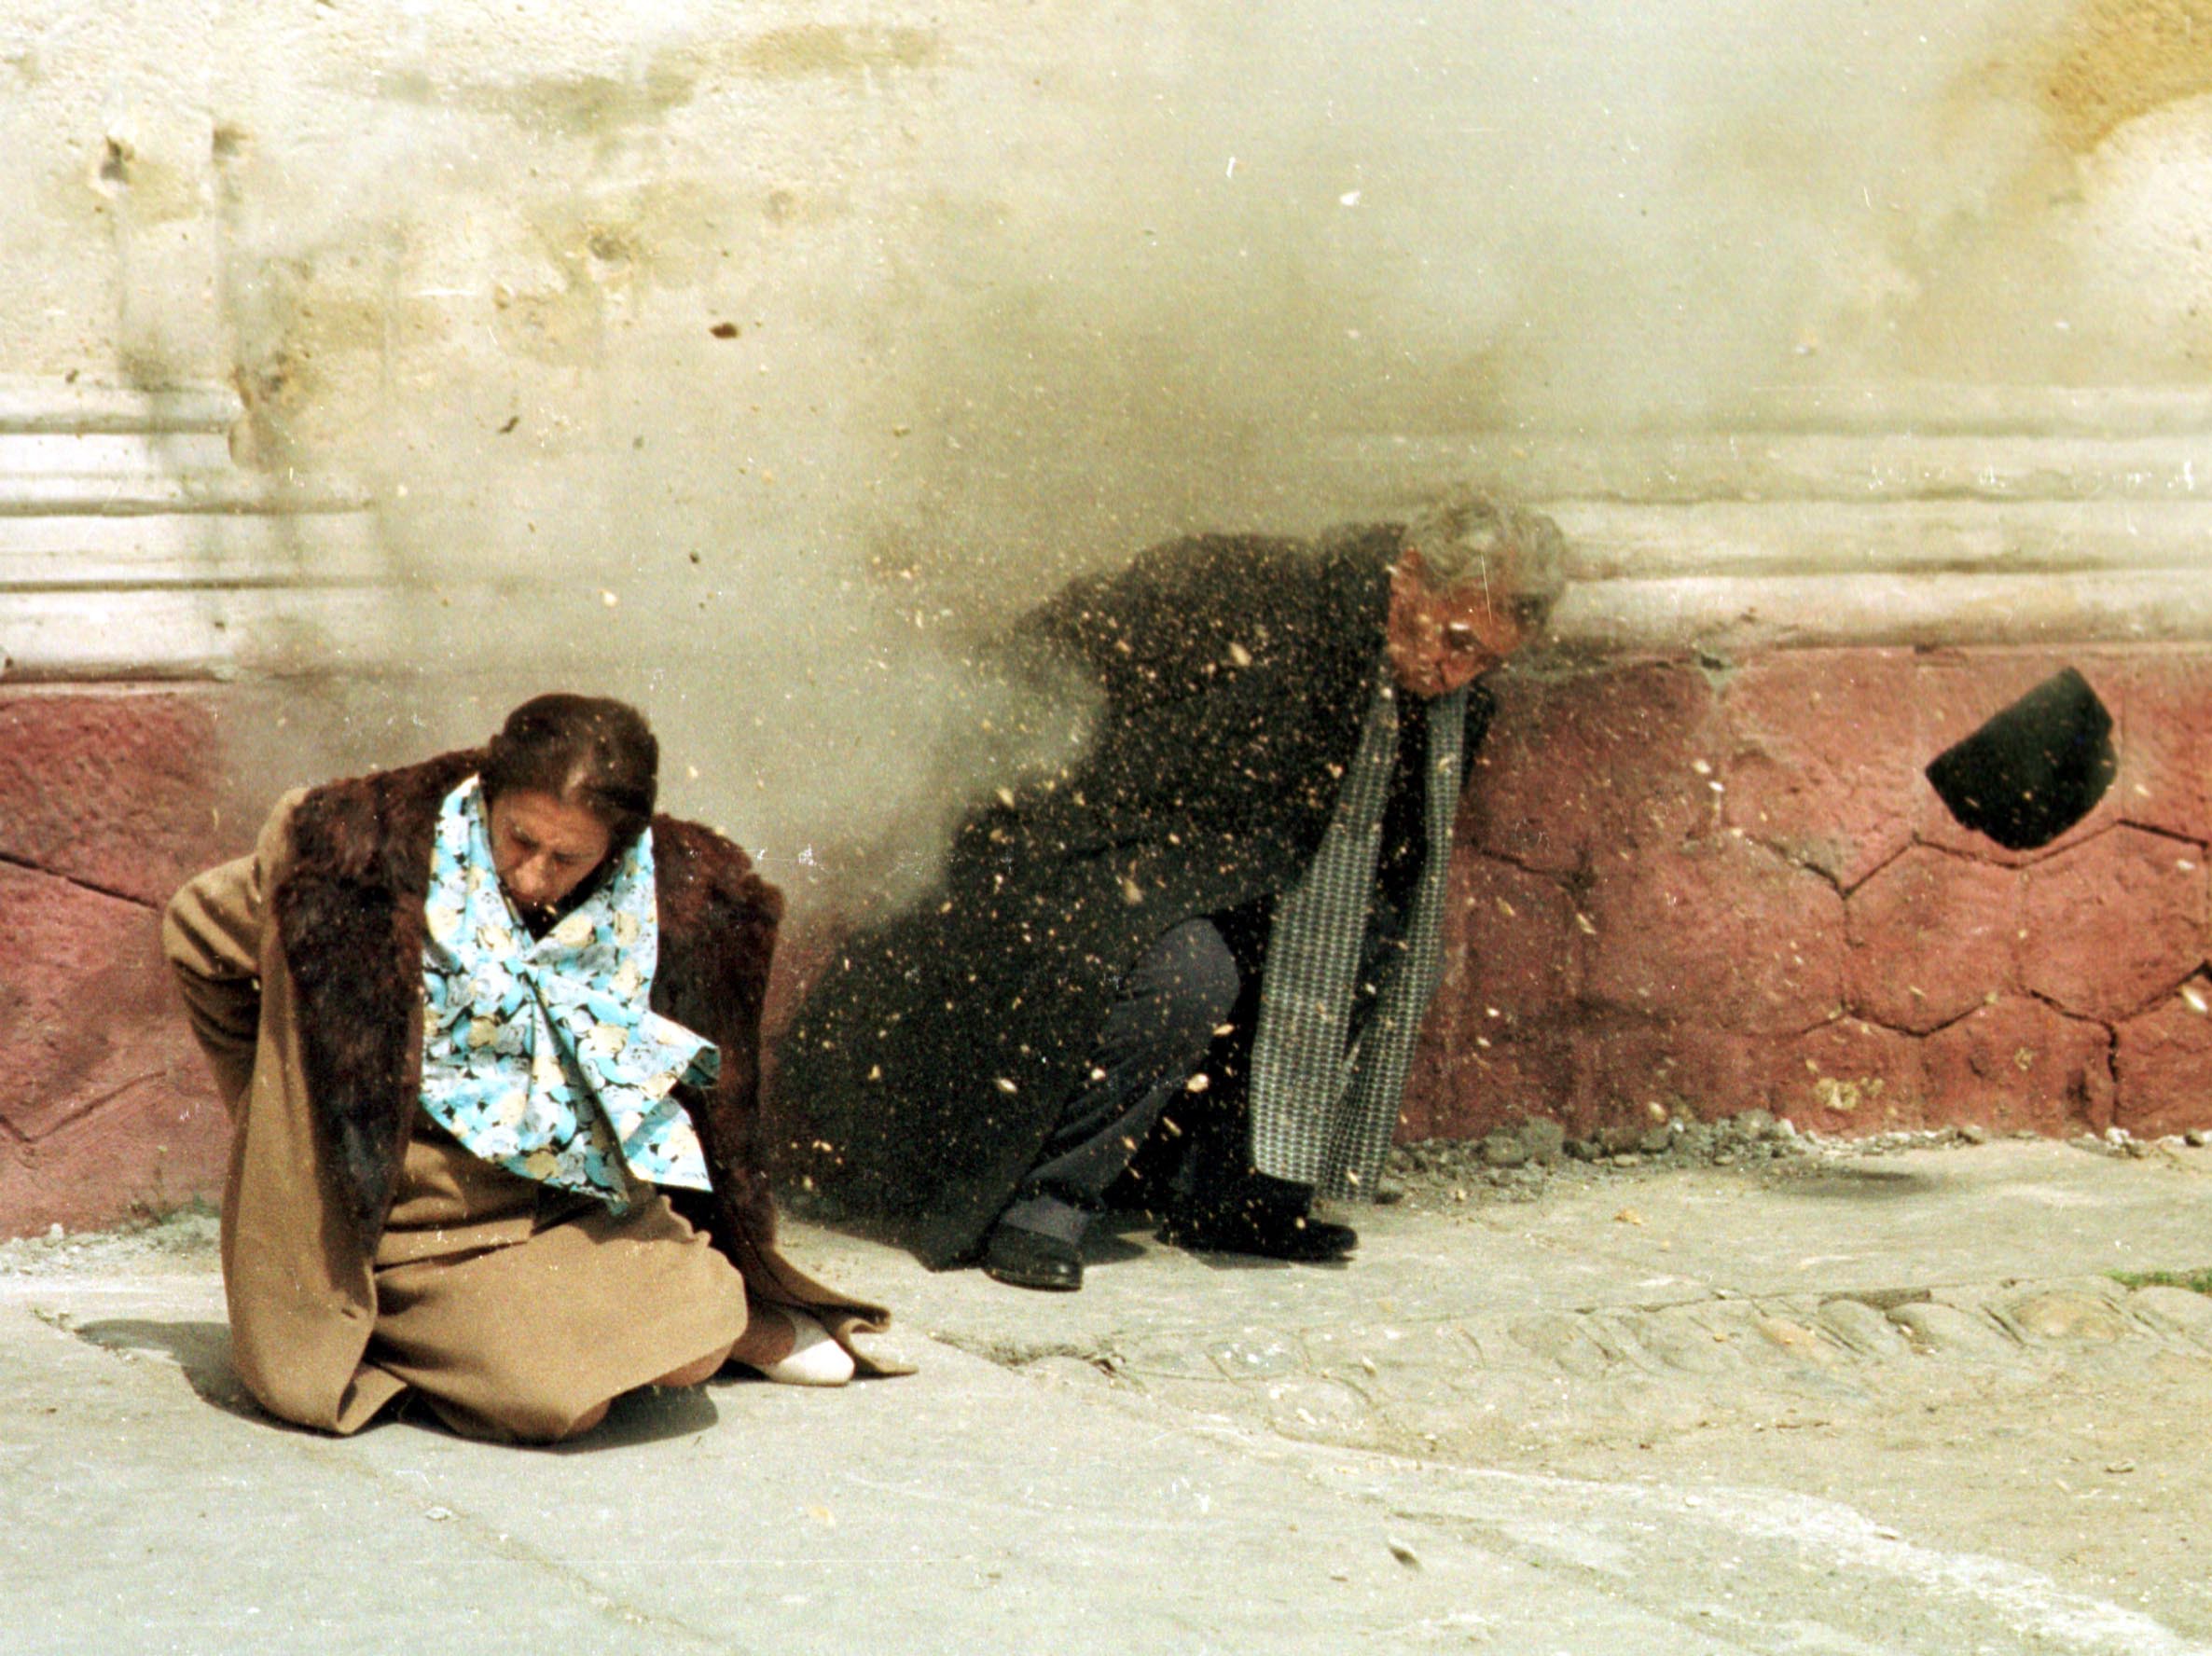 Execuția soților Ceaușescu